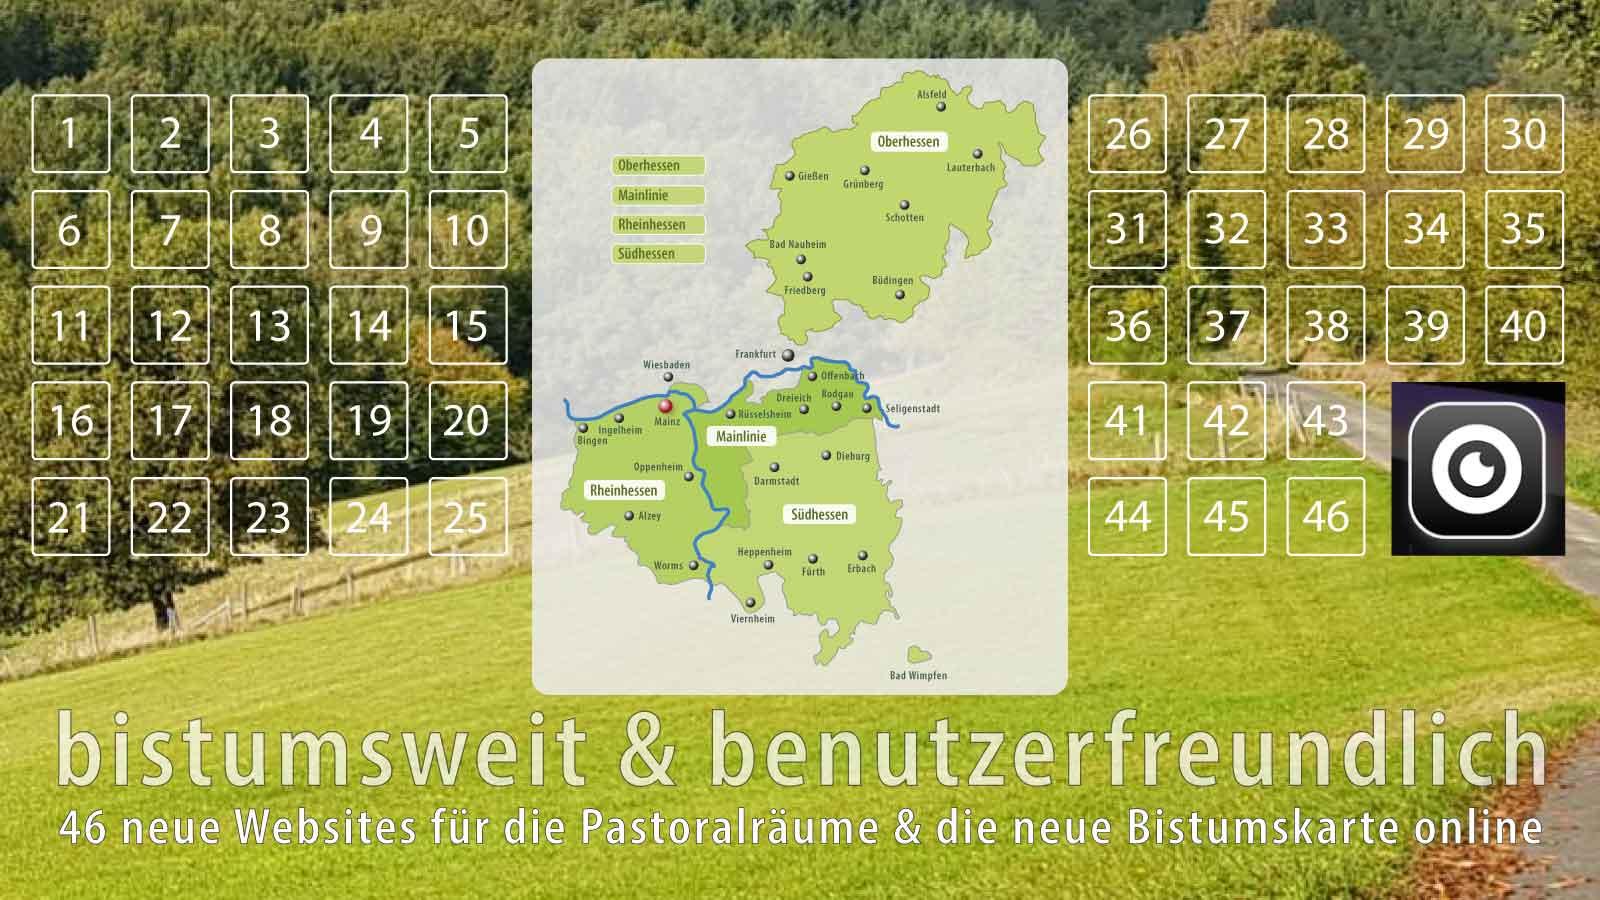 Teaser Dachwebsites und neue Bistumskarte